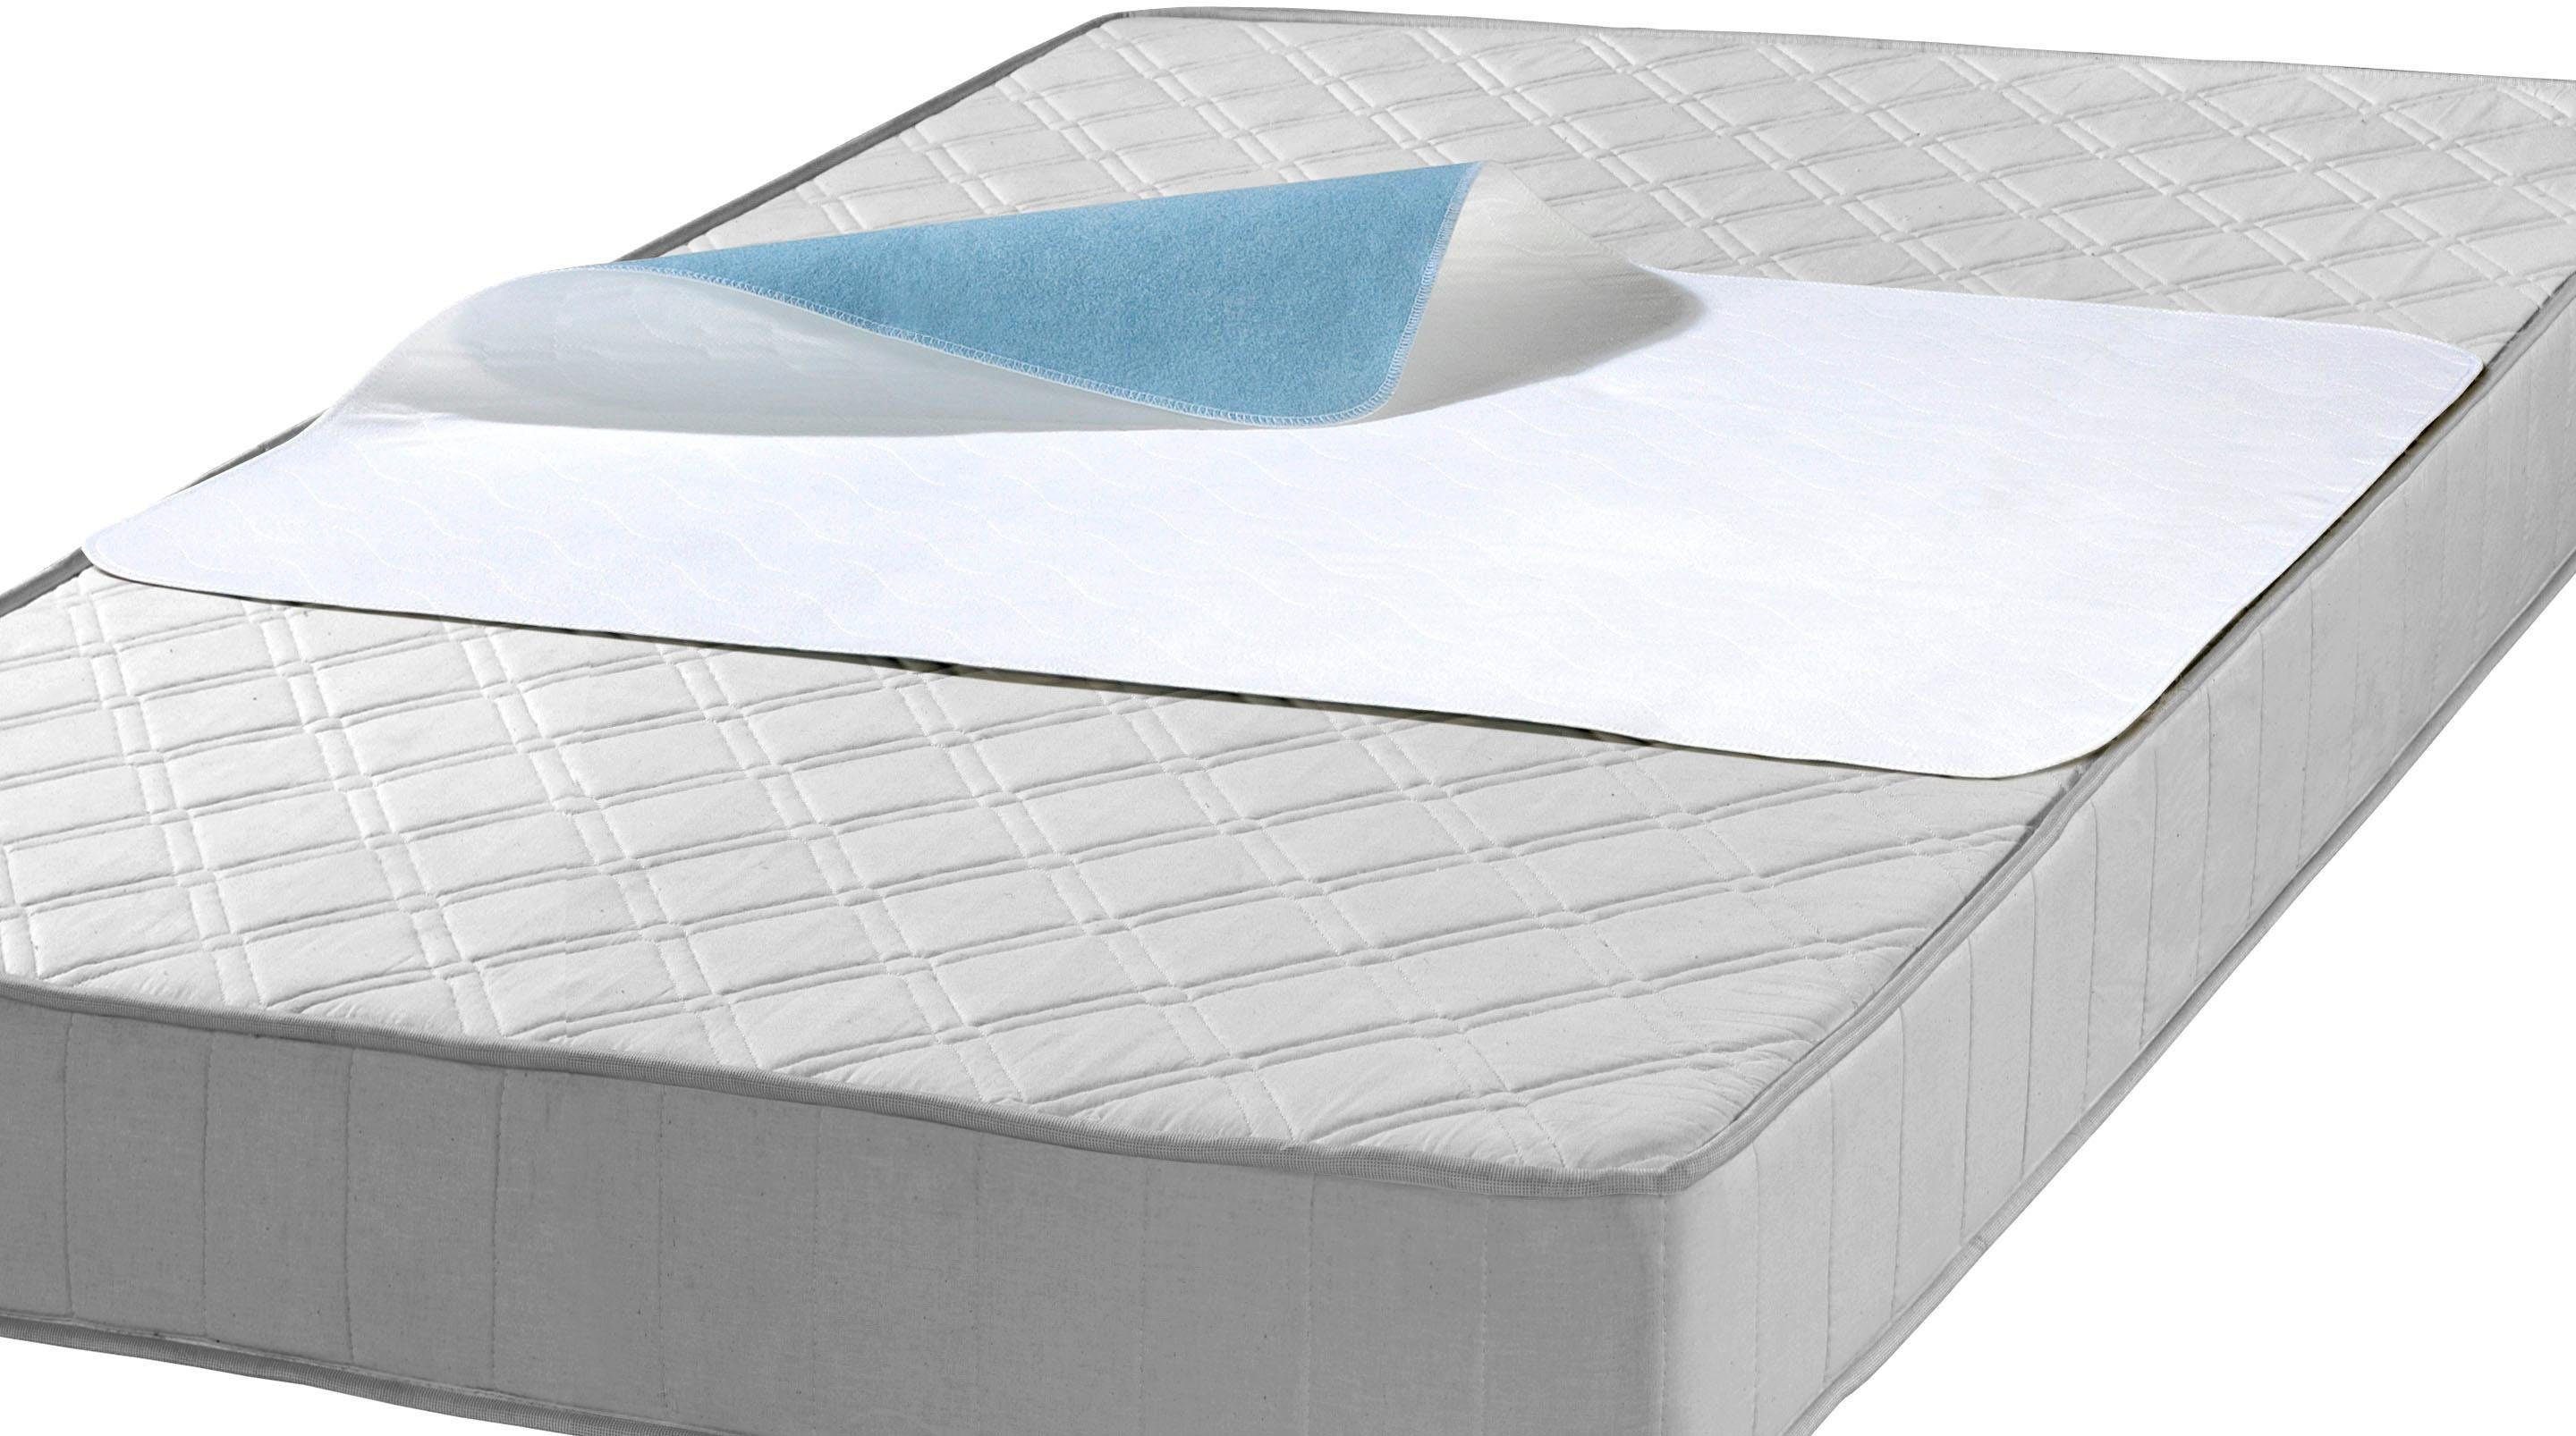 Matratzenauflage Inkontinenz-Mehrwegunterlage Generation SETEX, wasserdichte Matratzenauflage, hohe Flüssigkeitsaufnahme im Doppelpack